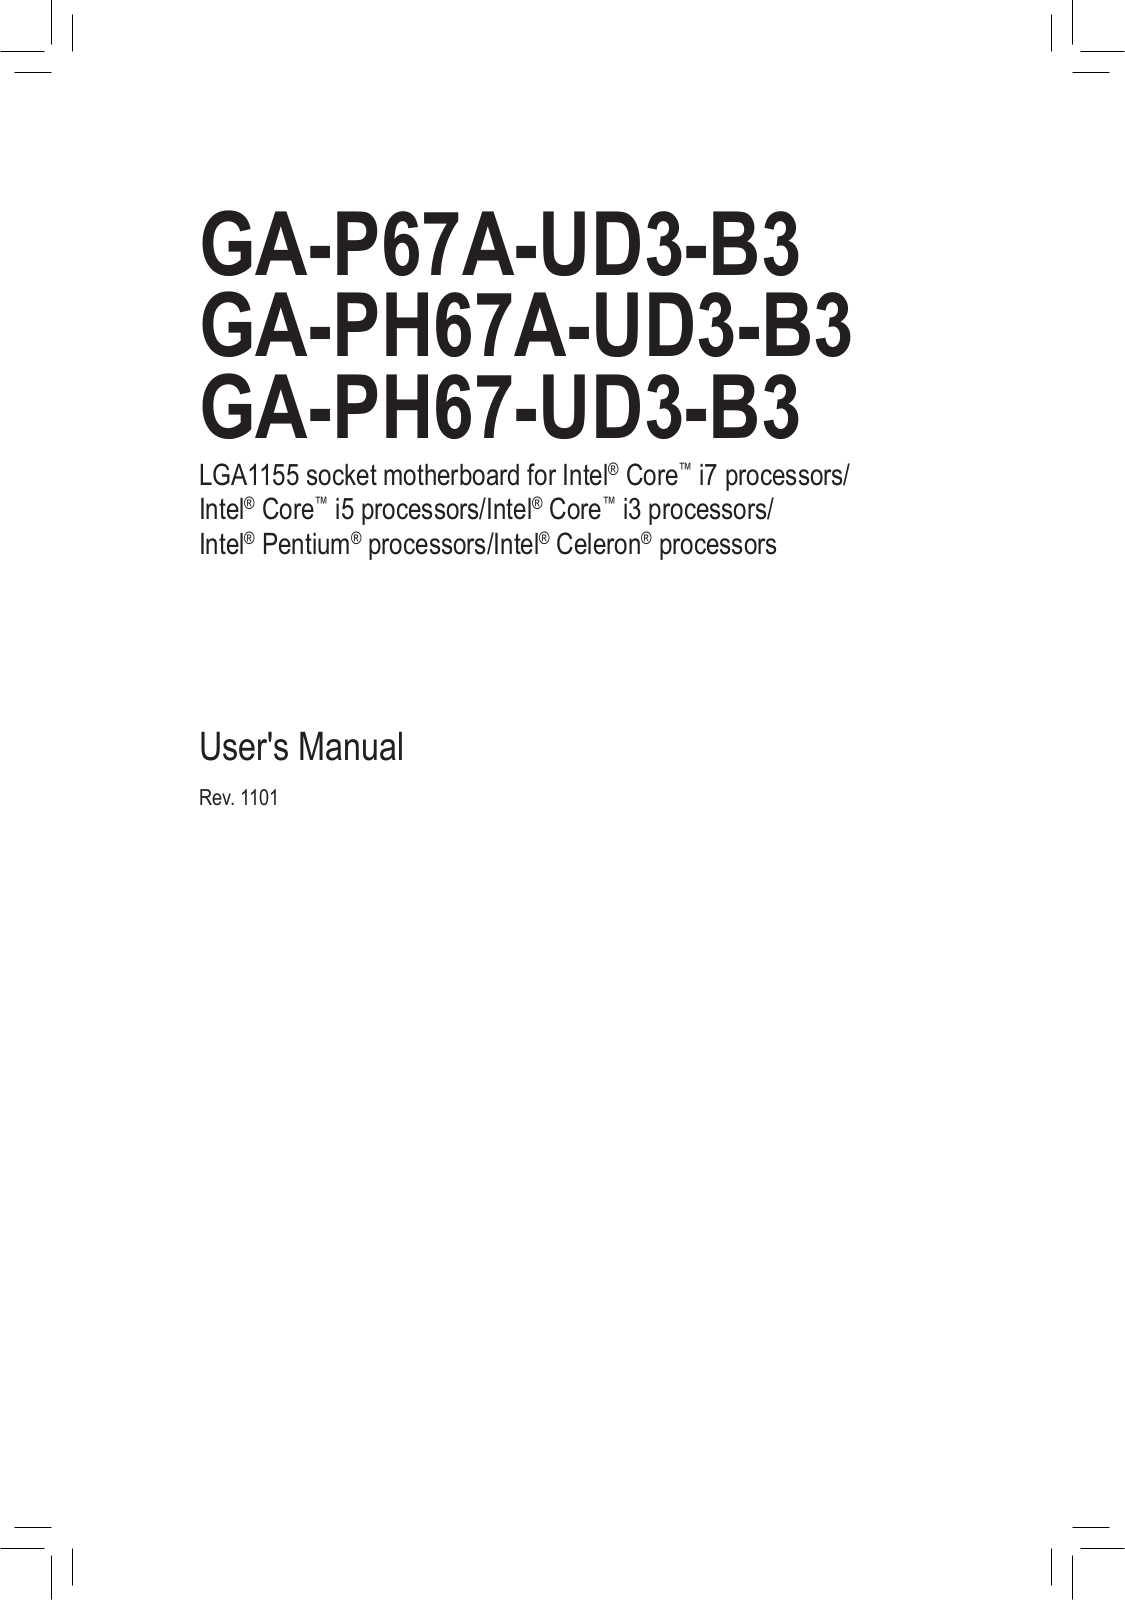 Gigabyte GA-P67A-UD3-B3 (rev. 1.1), GA-PH67-UD3-B3 (rev. 1.1), GA-PH67A-UD3-B3 (rev. 1.1) User Manual